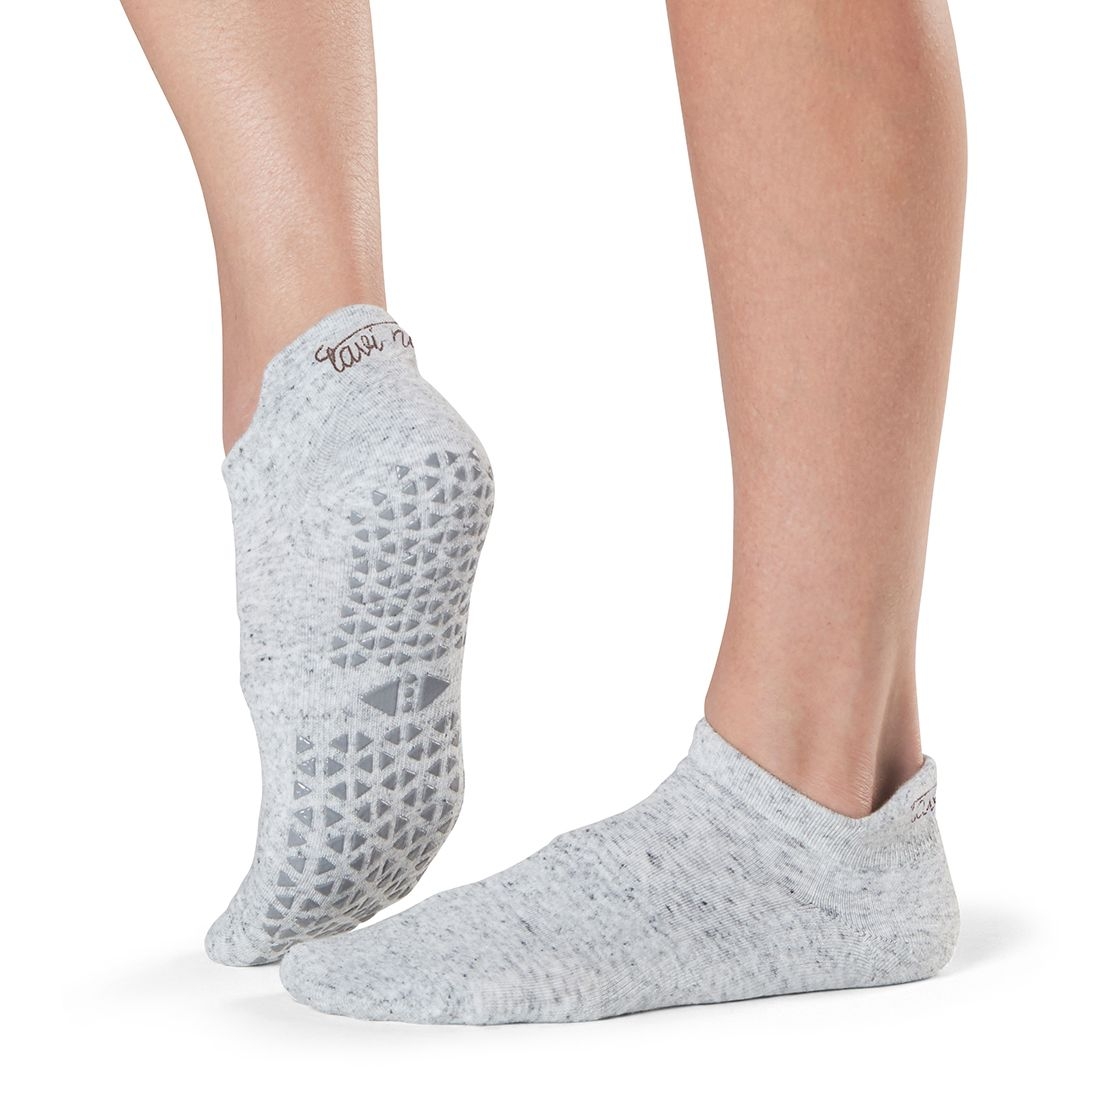 investering gelijktijdig Omgekeerd Antislip sokken van Tavi Noir zijn ook ideaal als huissokken